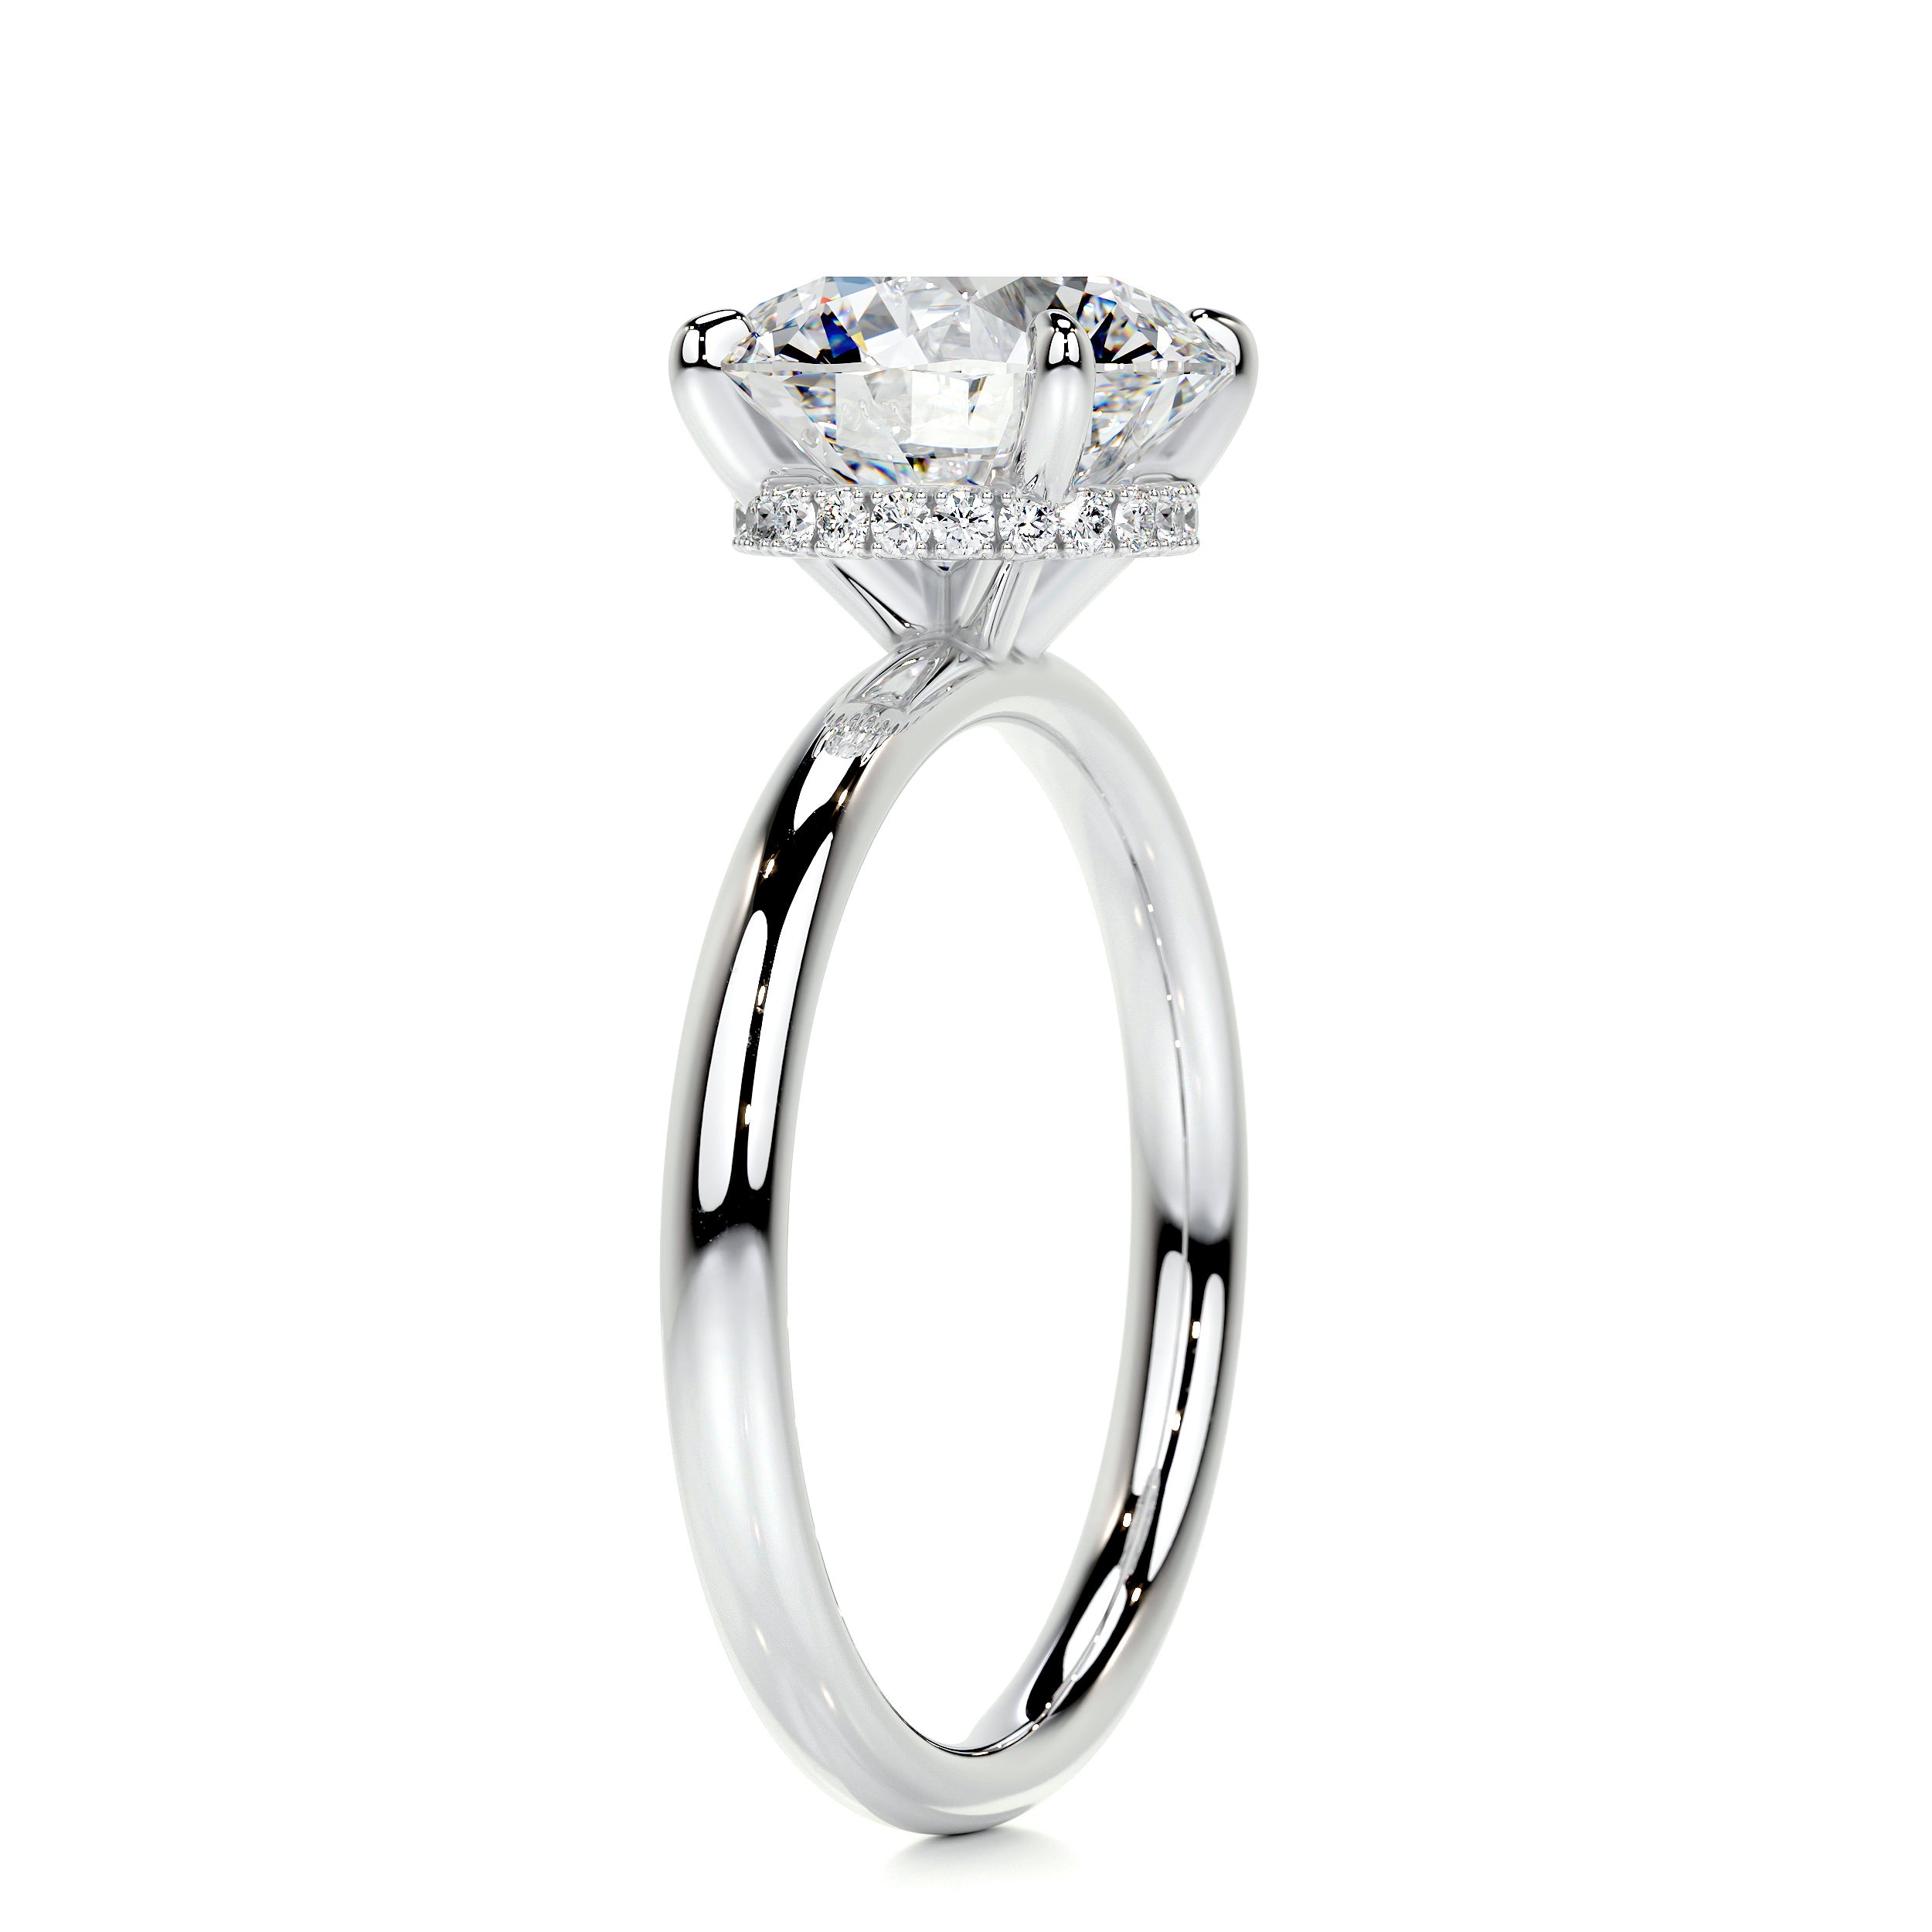 Willow Diamond Engagement Ring   (2.1 Carat) -18K White Gold